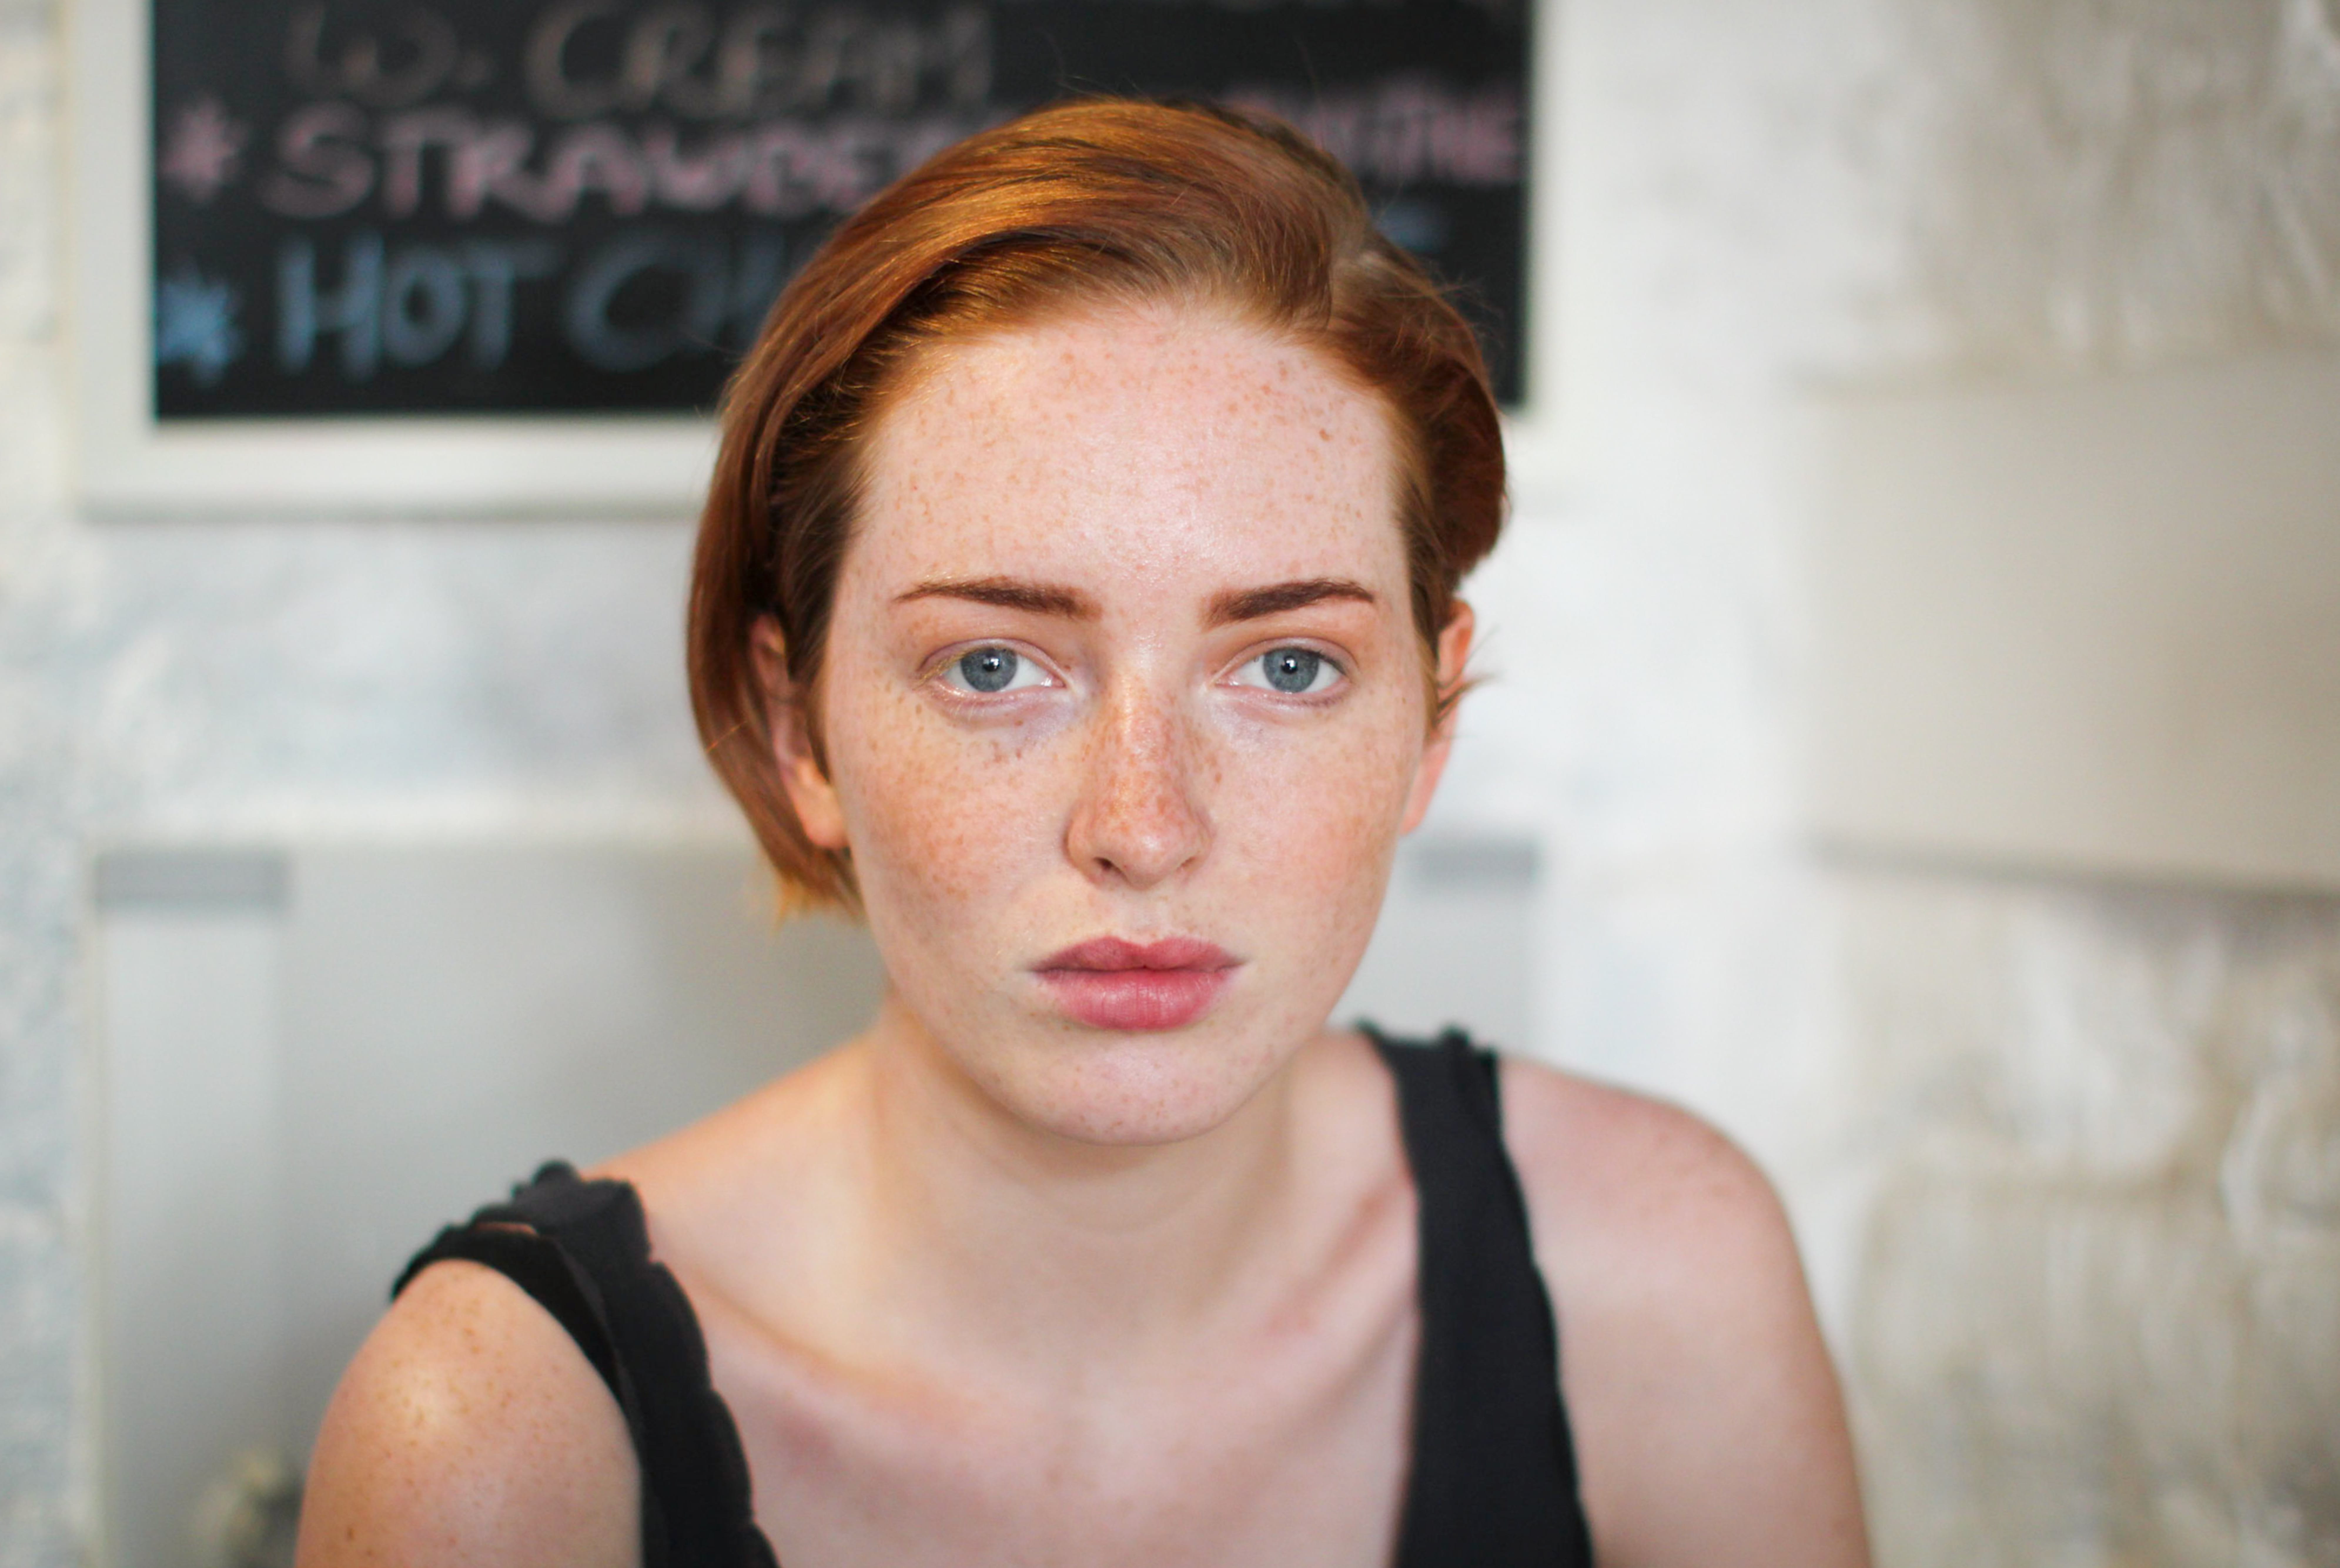 Ansiktsbild av en kvinna med normal frisk hudtyp